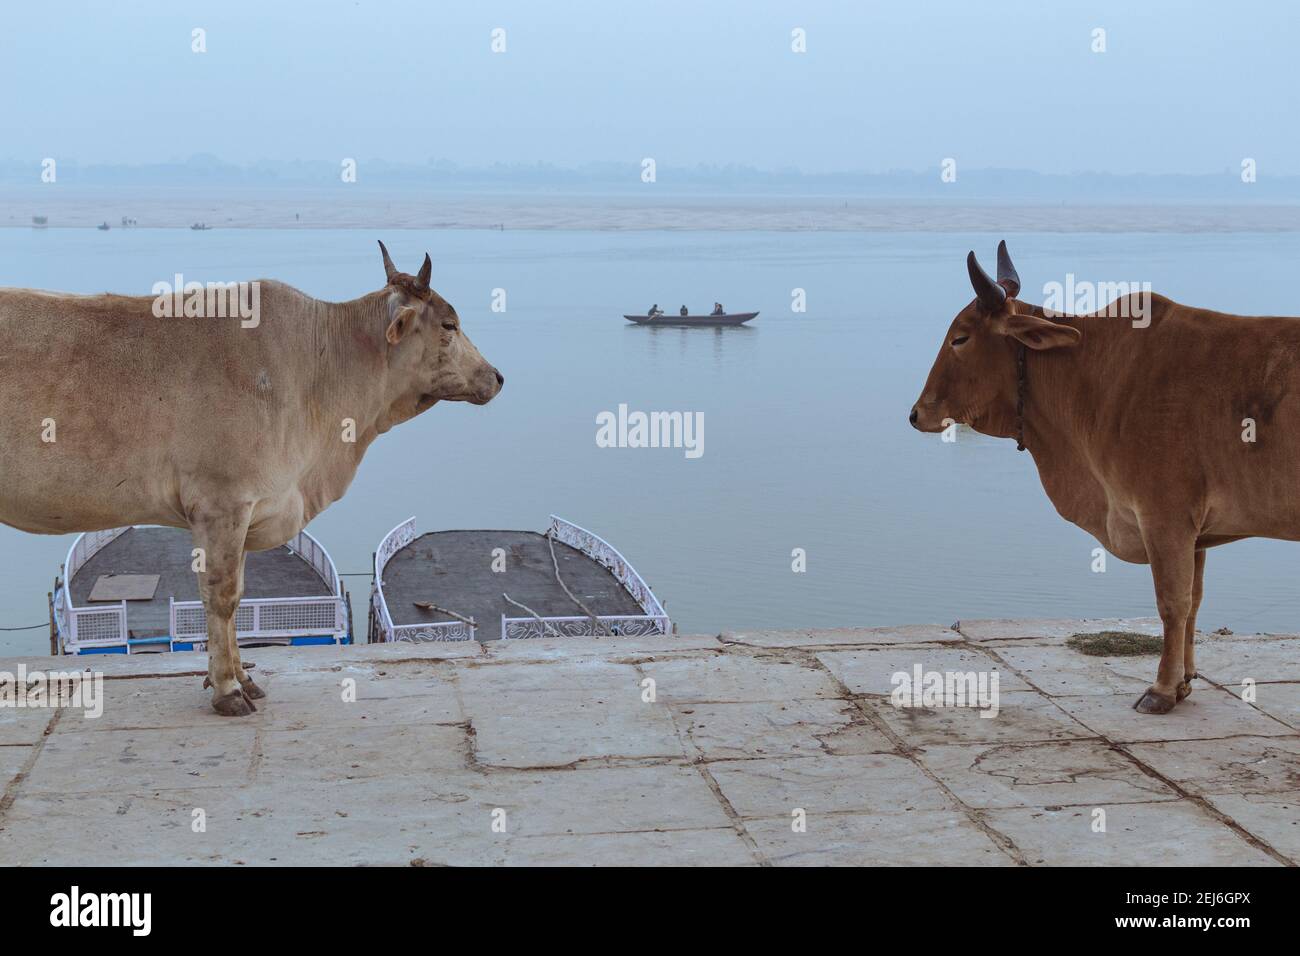 Scène typique à Varanasi, Inde: Vaches indiennes dans le remblai ancien et un bateau naviguant sur le fleuve Ganges en arrière-plan. Banque D'Images